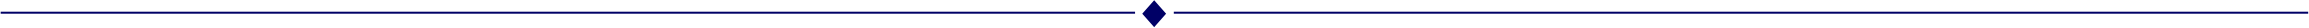 blue-divider-line